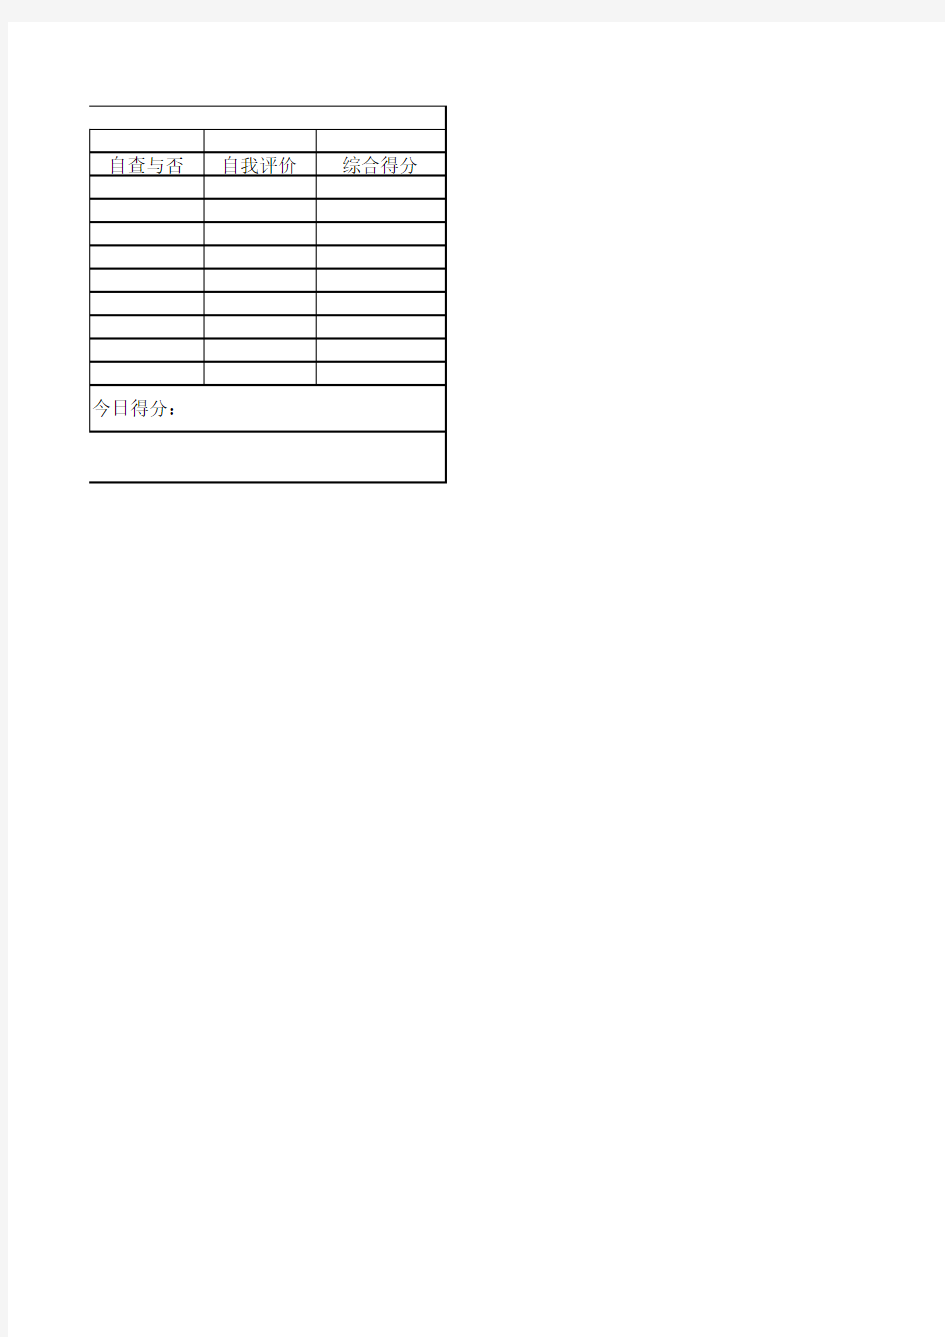 作业登记表(学生版)